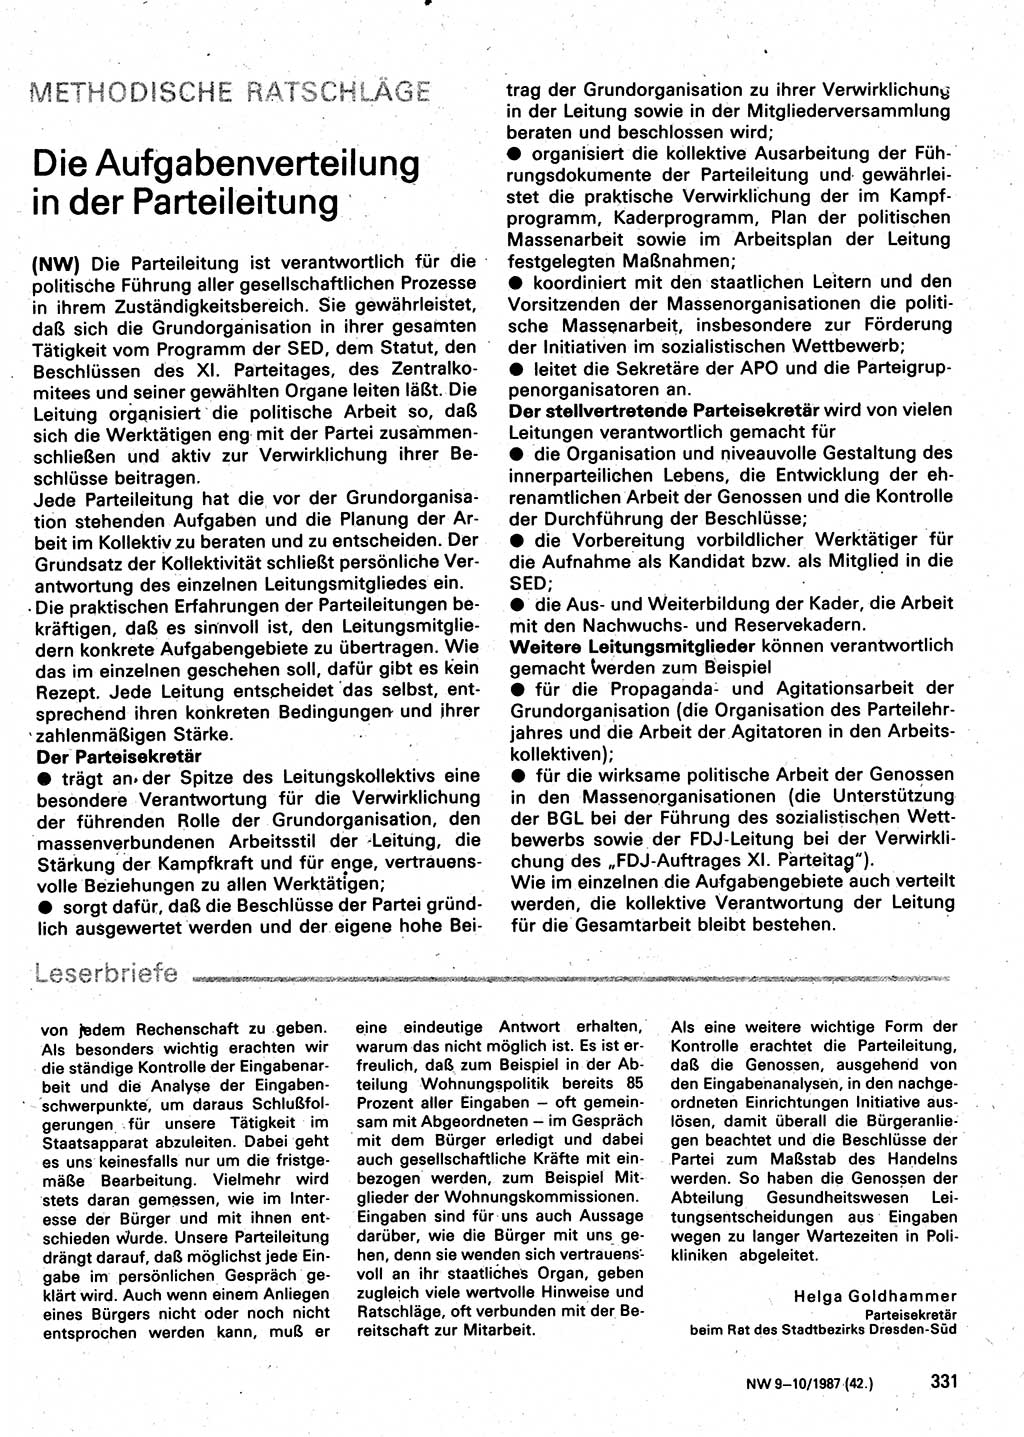 Neuer Weg (NW), Organ des Zentralkomitees (ZK) der SED (Sozialistische Einheitspartei Deutschlands) für Fragen des Parteilebens, 42. Jahrgang [Deutsche Demokratische Republik (DDR)] 1987, Seite 331 (NW ZK SED DDR 1987, S. 331)